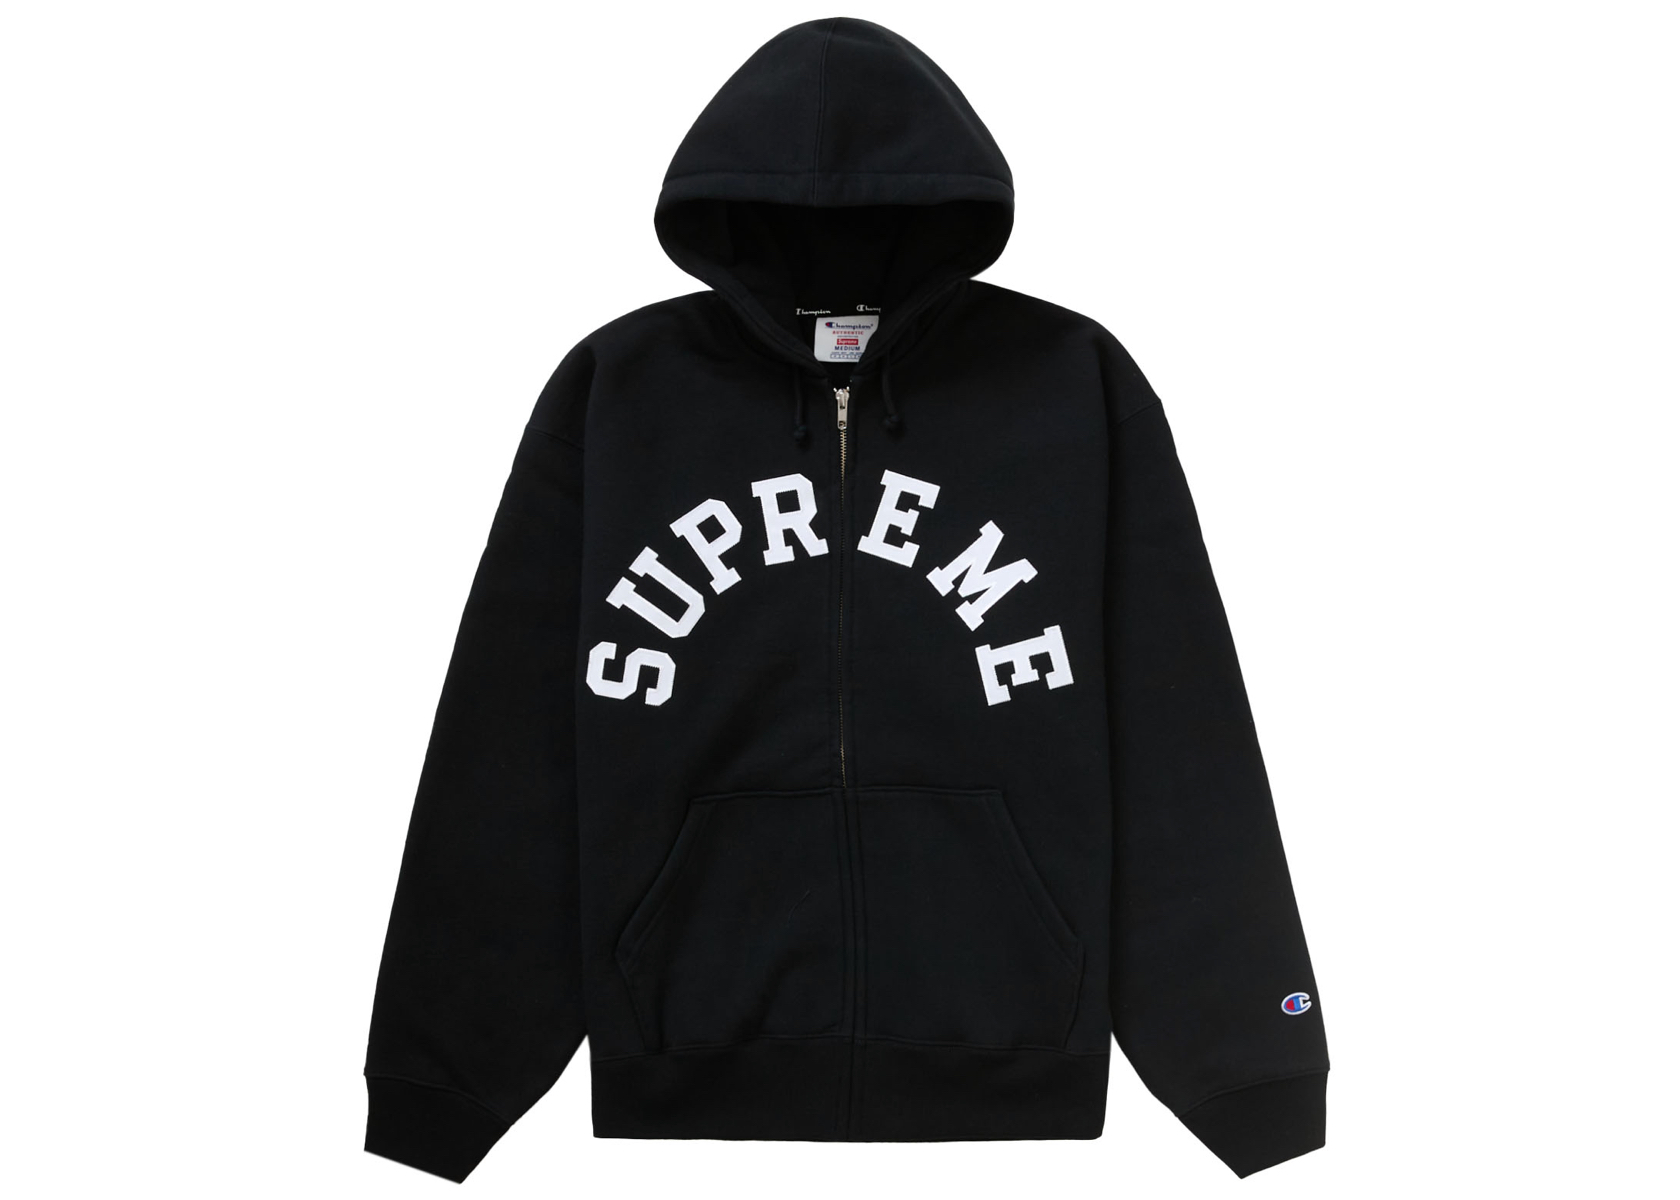 Supreme Champion Zipup Hooded Sweatshirtオンライン店舗完売品です